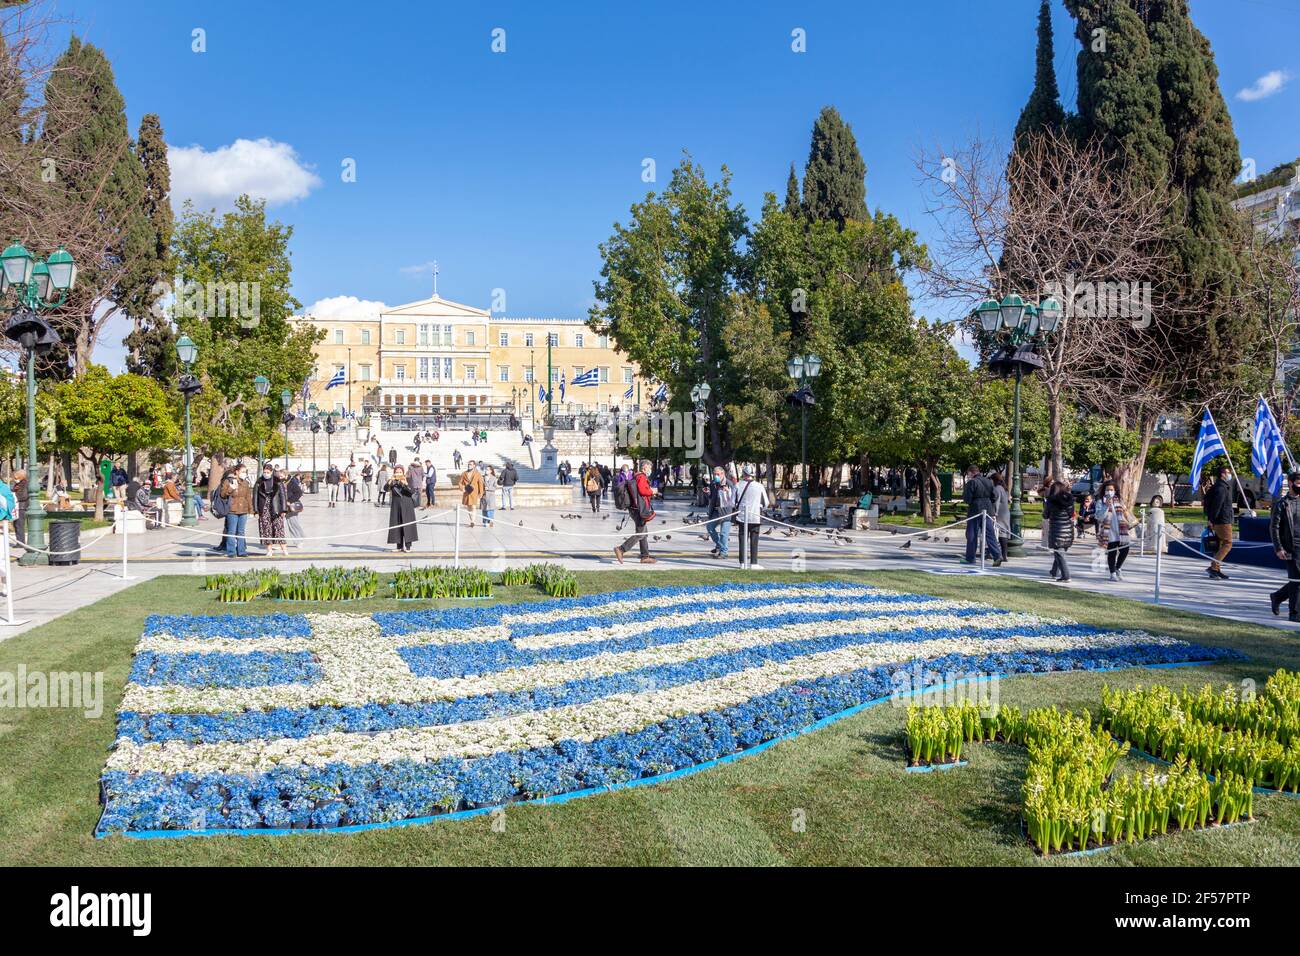 Una bandera griega hecha de flores azules y blancas en la plaza Syntagma, Atenas, durante las celebraciones de 200 años del día de la Independencia griega (1821-2021) Foto de stock